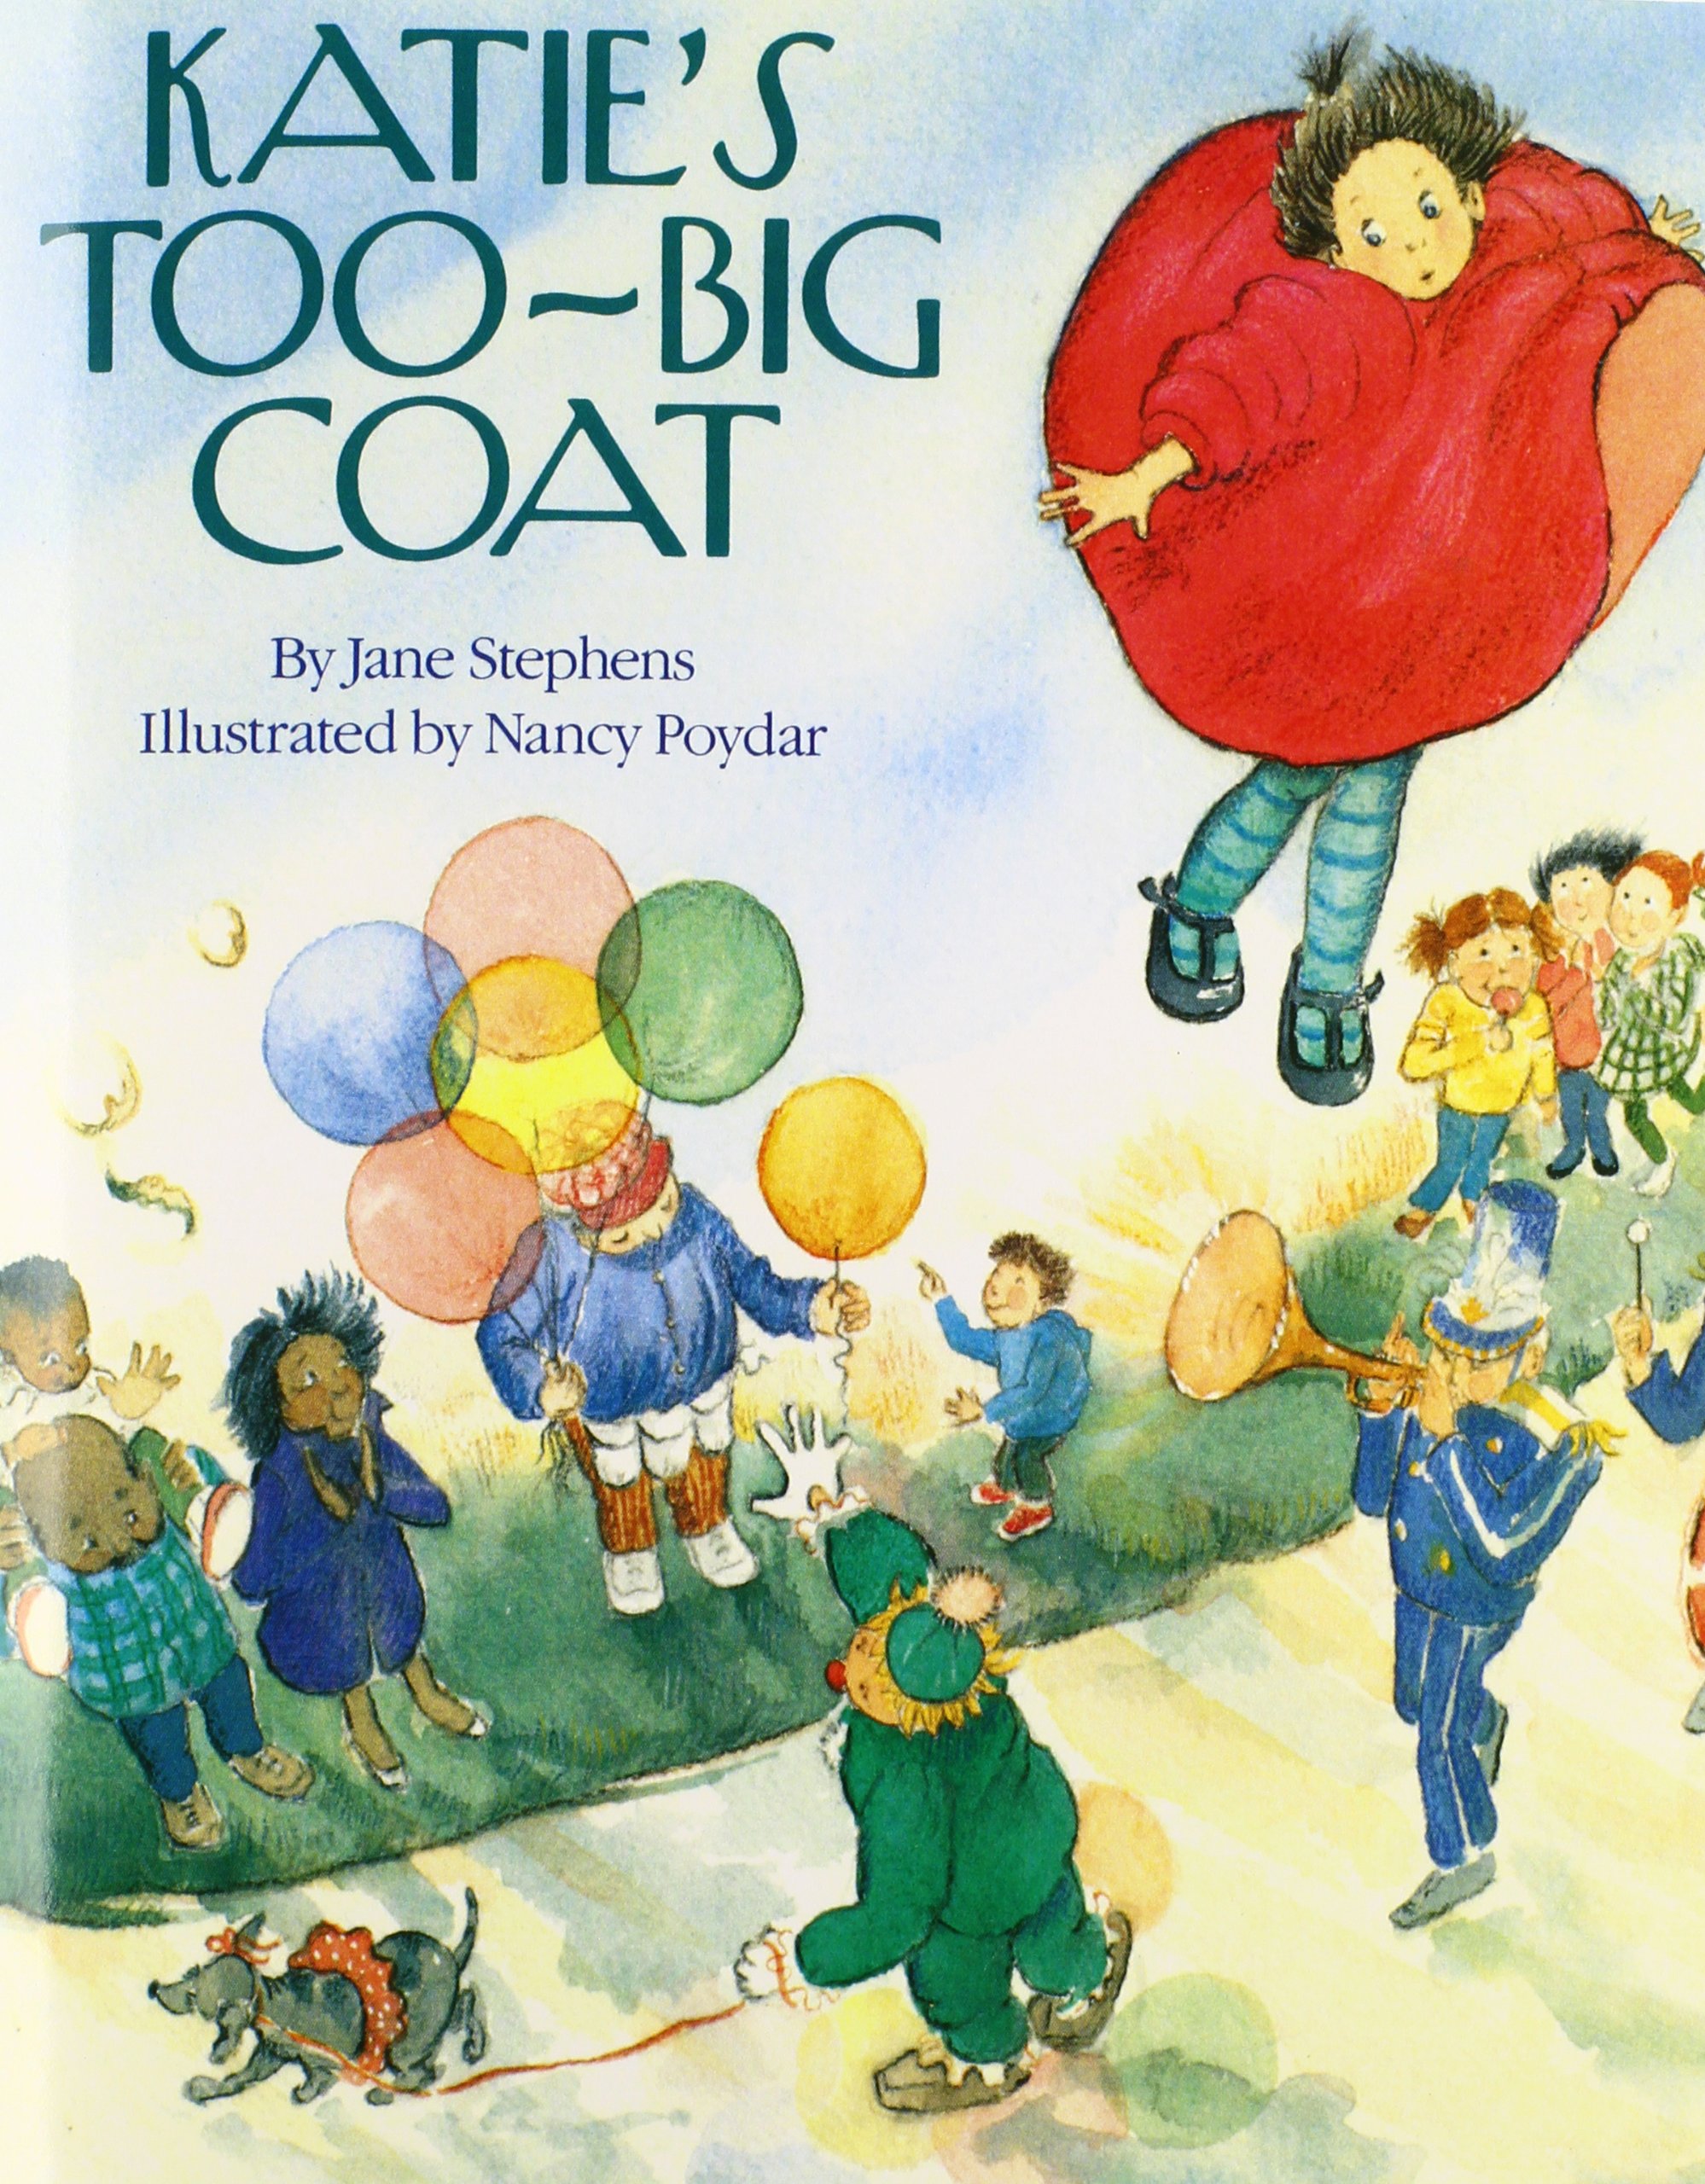 Katie's Too-Big Coat